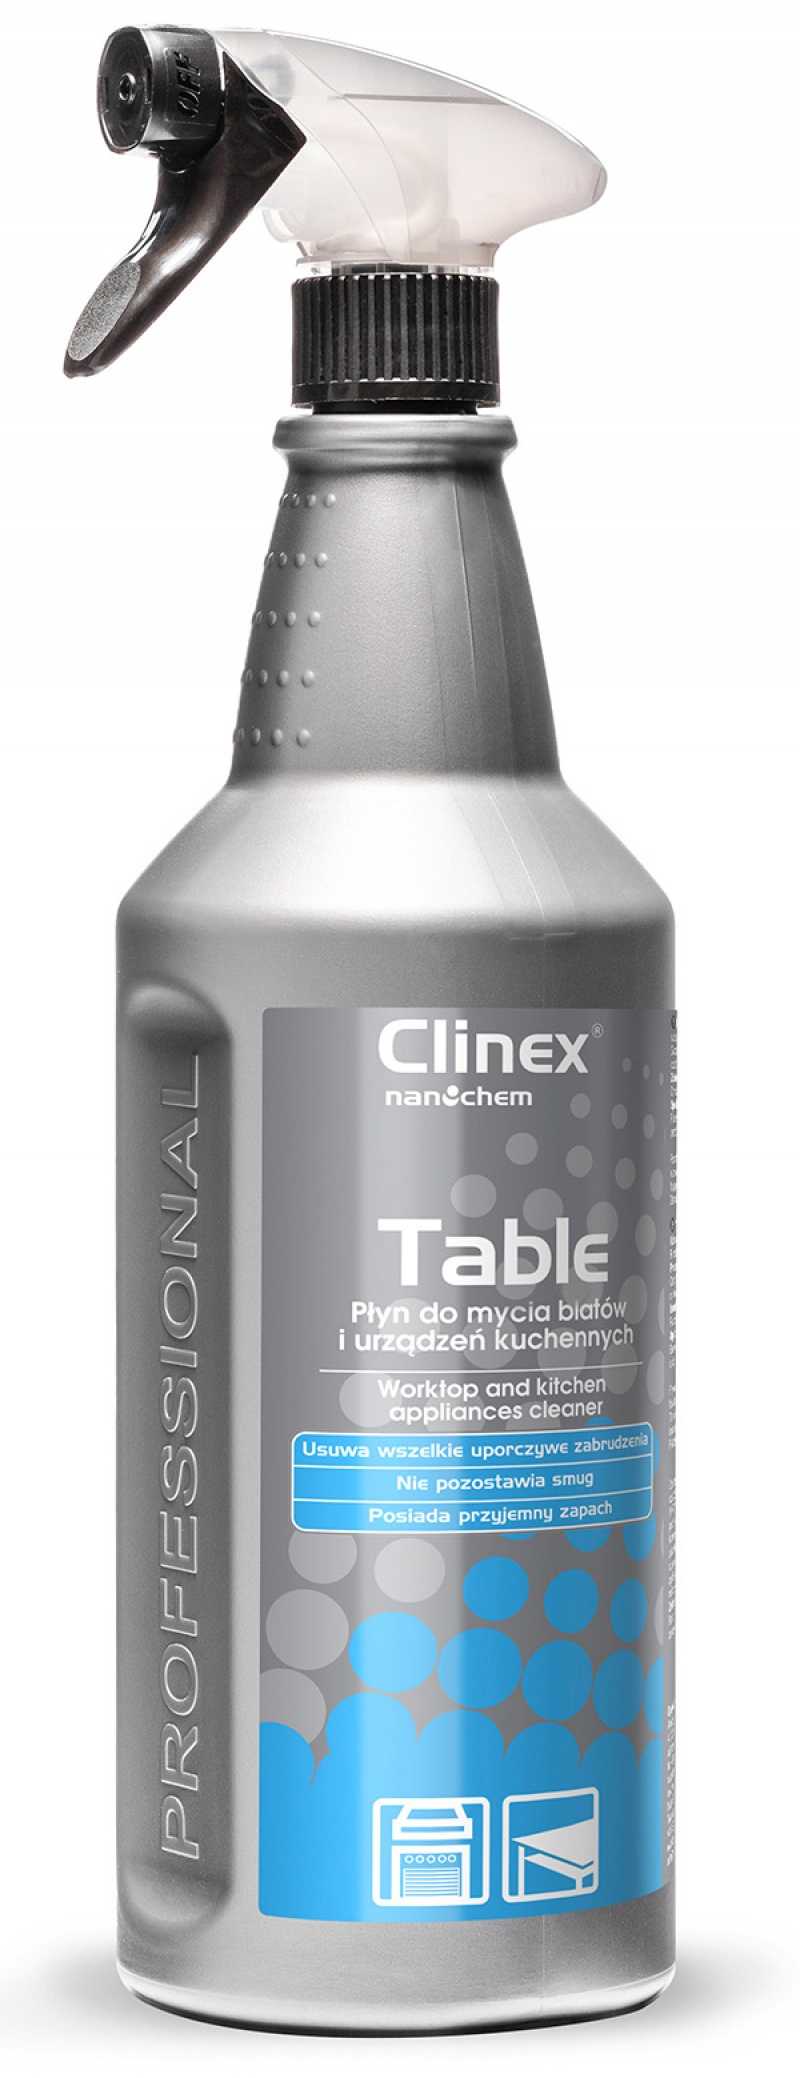 Solutie pt. curatare suprafete si aparate din bucatarie, 1 litru, cu pulverizator, Clinex Table